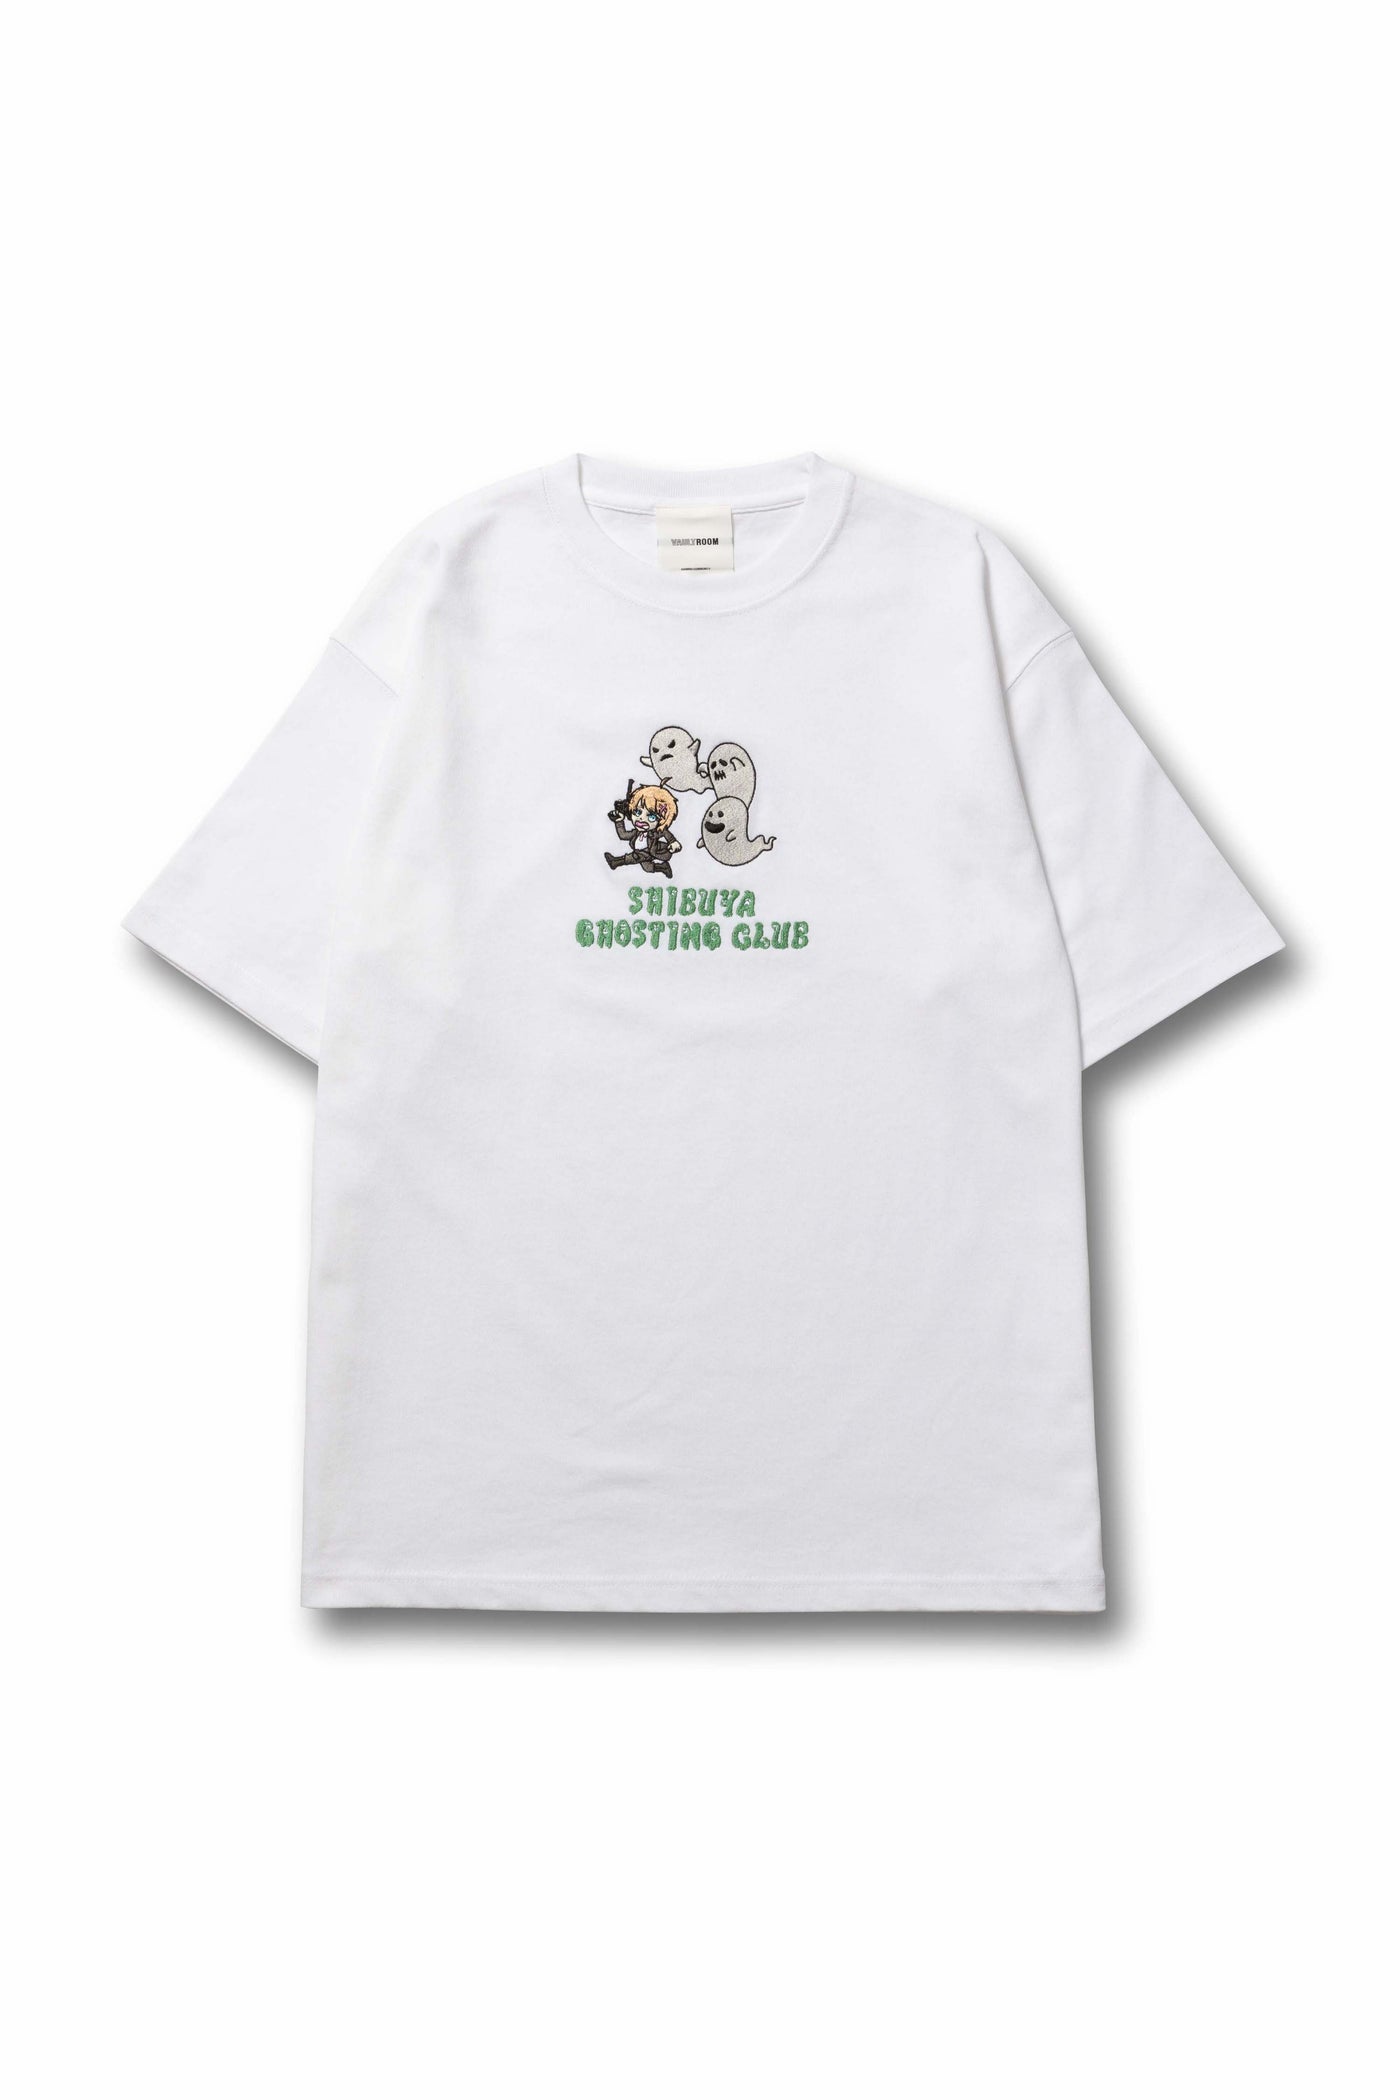 ボルトルームvaultroom × SGC TEE / WHT Lsize - Tシャツ/カットソー